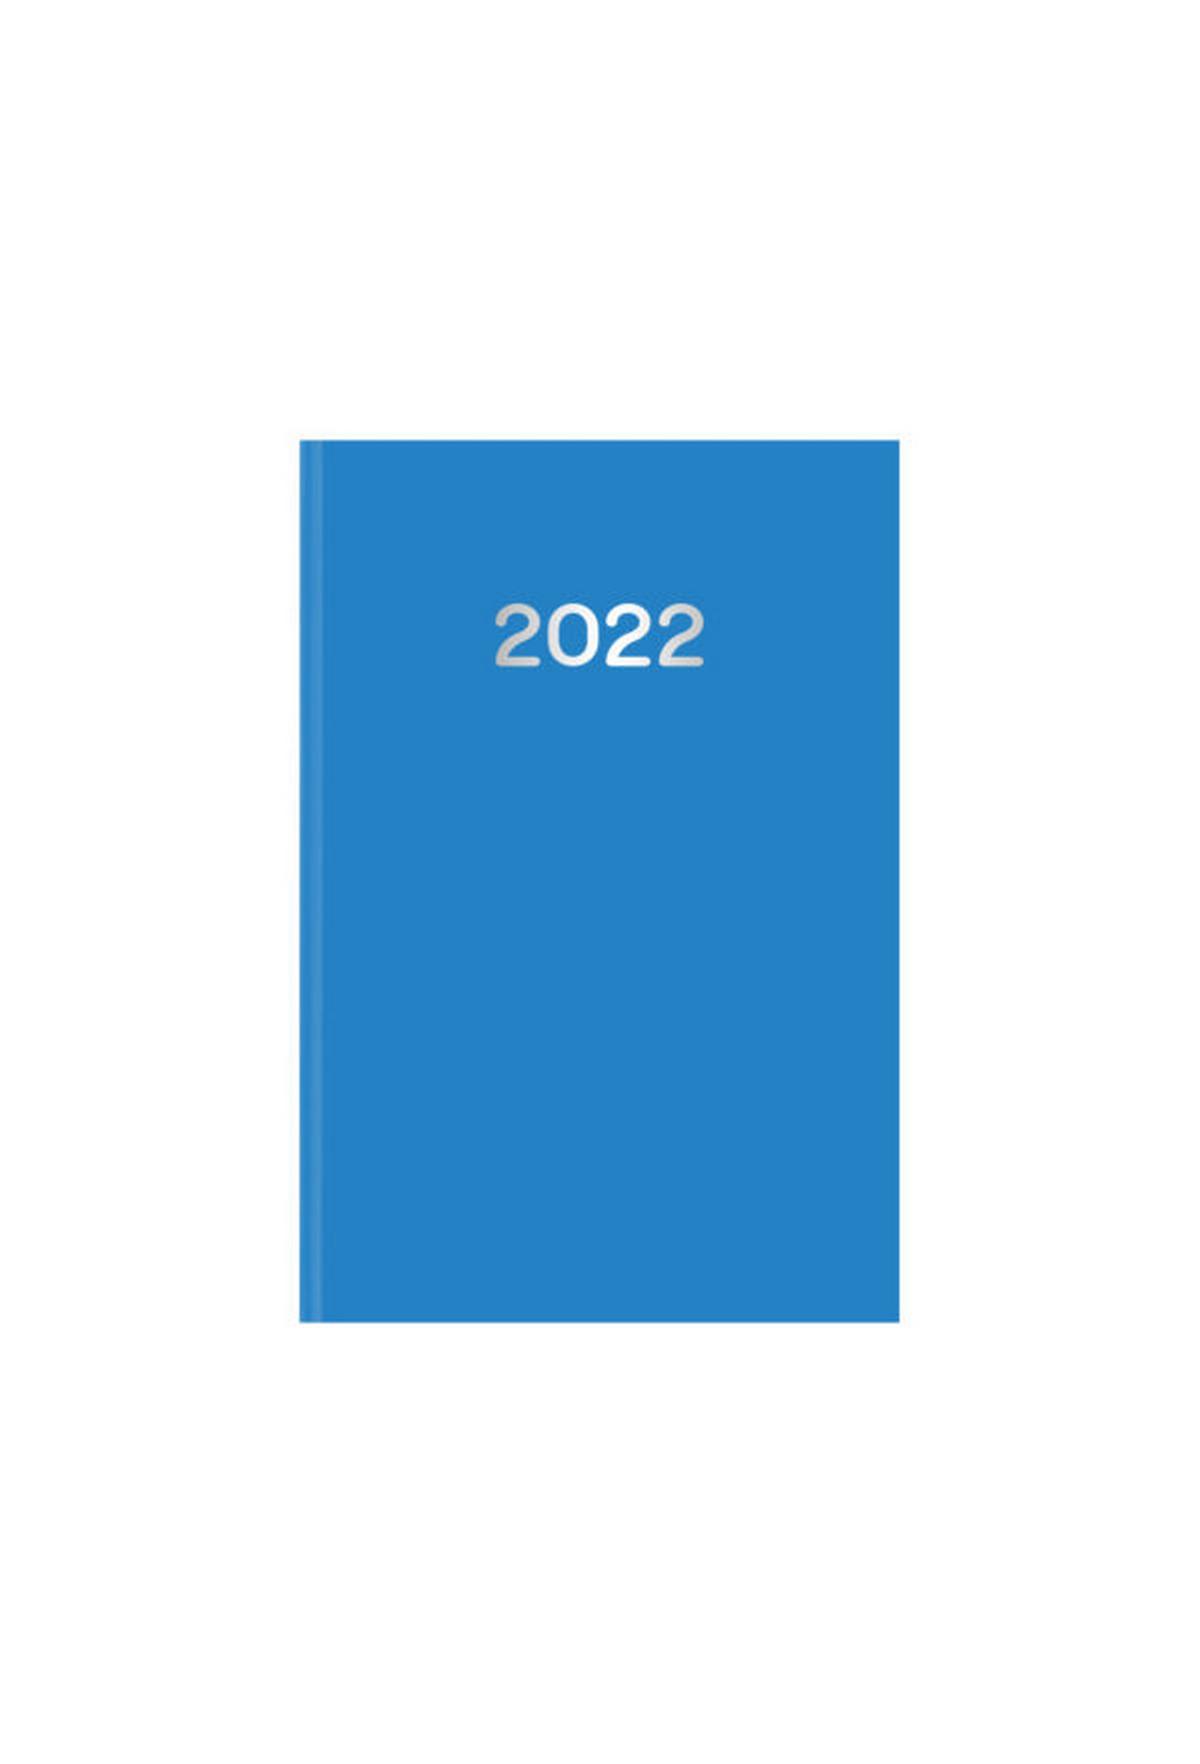 Ημερήσιο ημερολόγιο 2022 simple γαλάζιο 10 x 14 cm